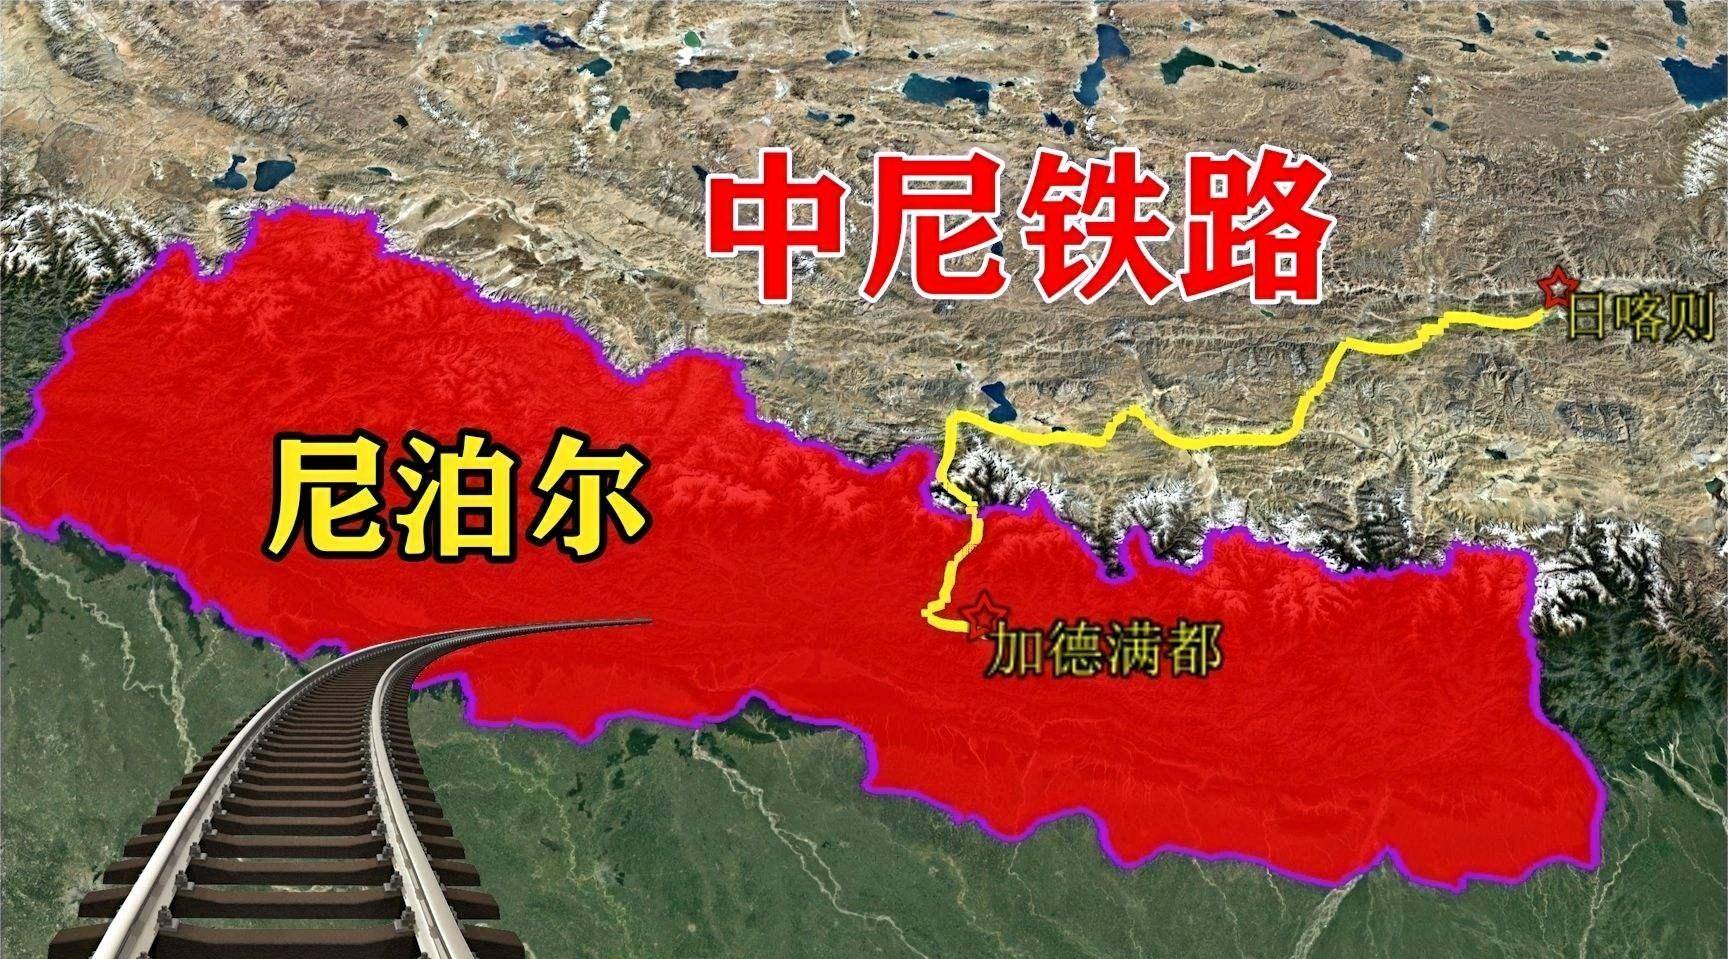 尼泊尔面积 平方公里图片